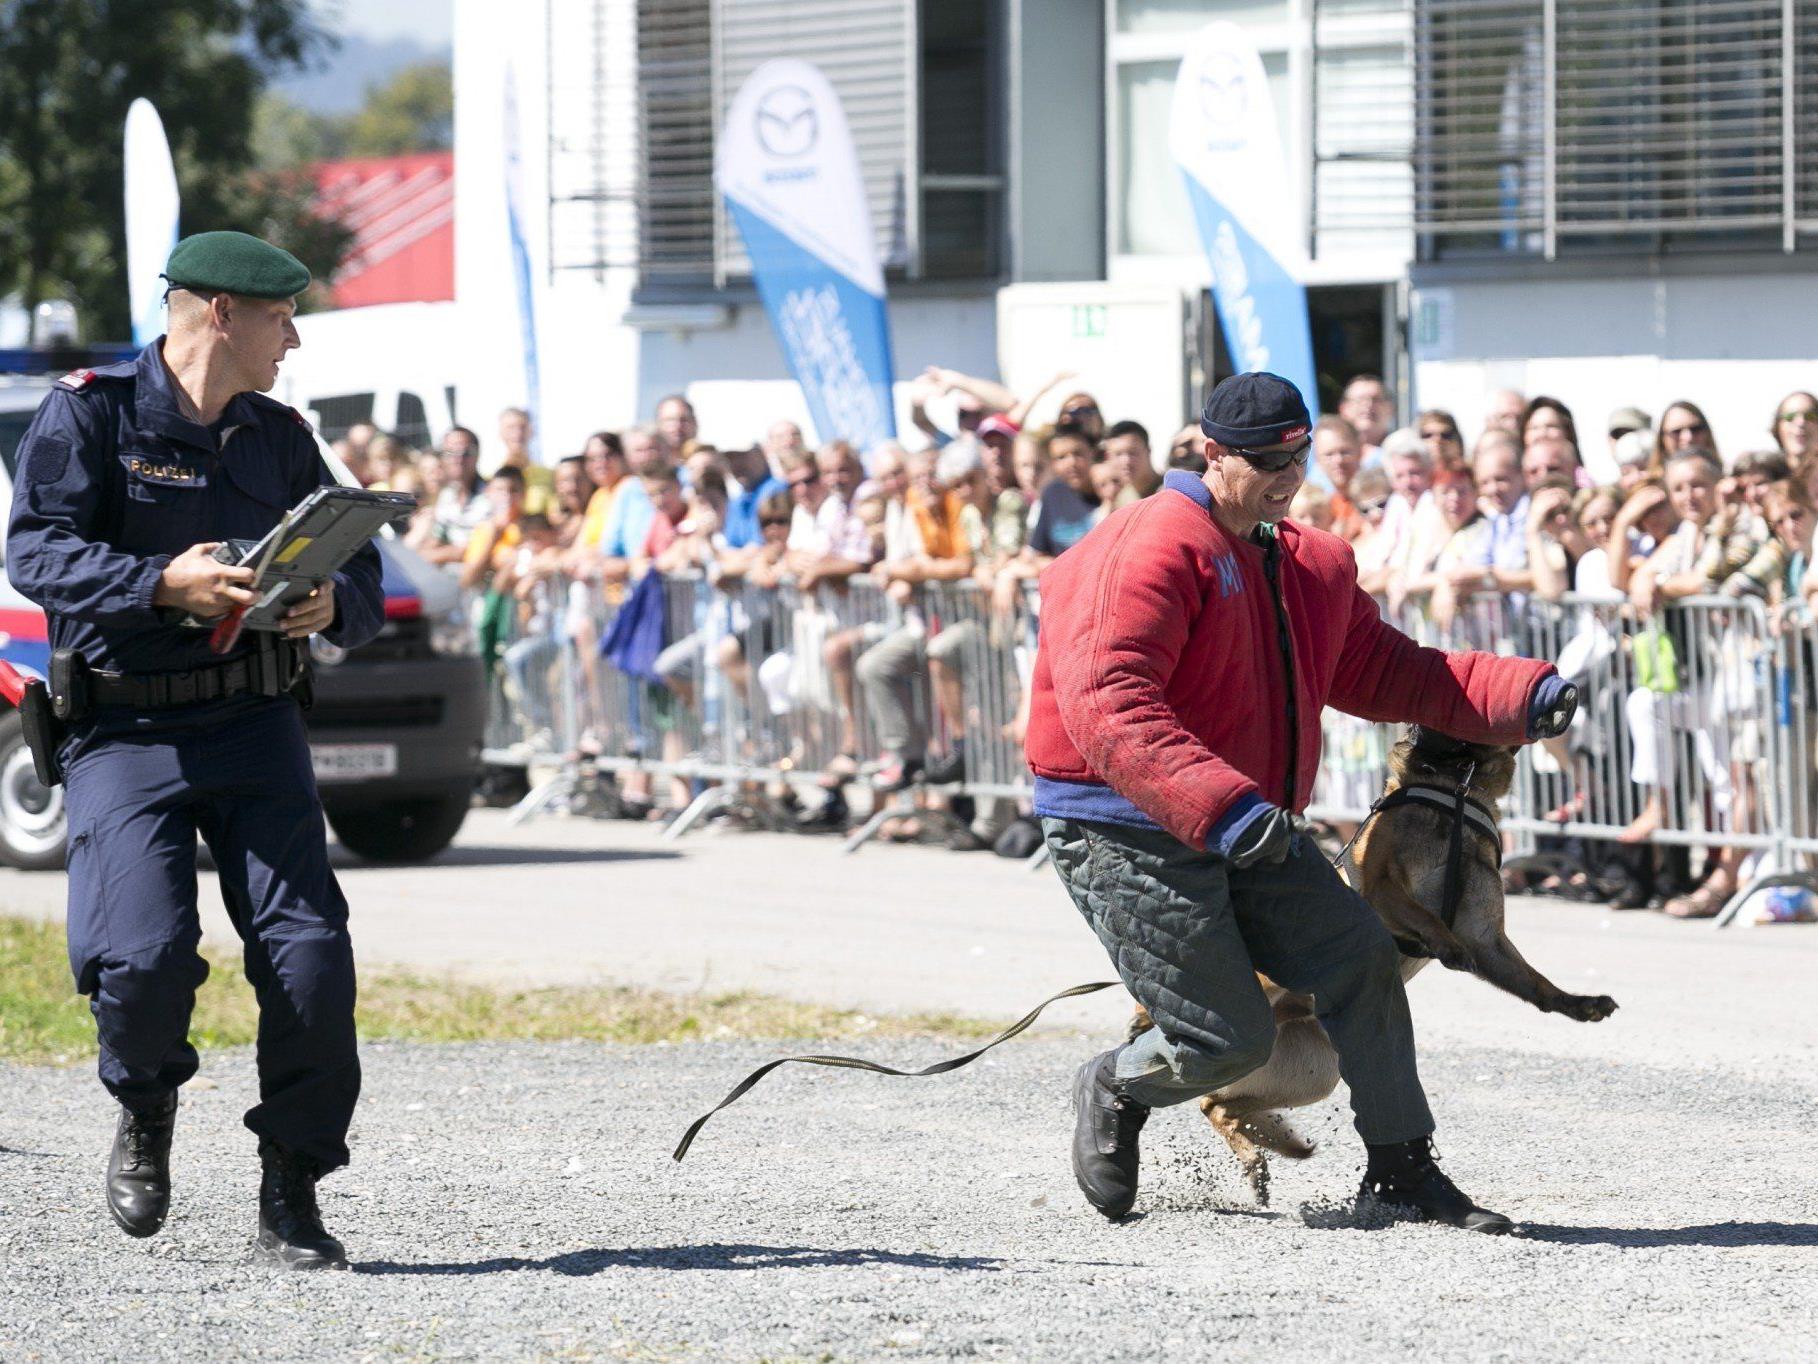 Täglich um 14 Uhr findet auf der Herbstmesse eine spektakuläre Show der Hundestaffel der Polizei sowie der Cobra statt.